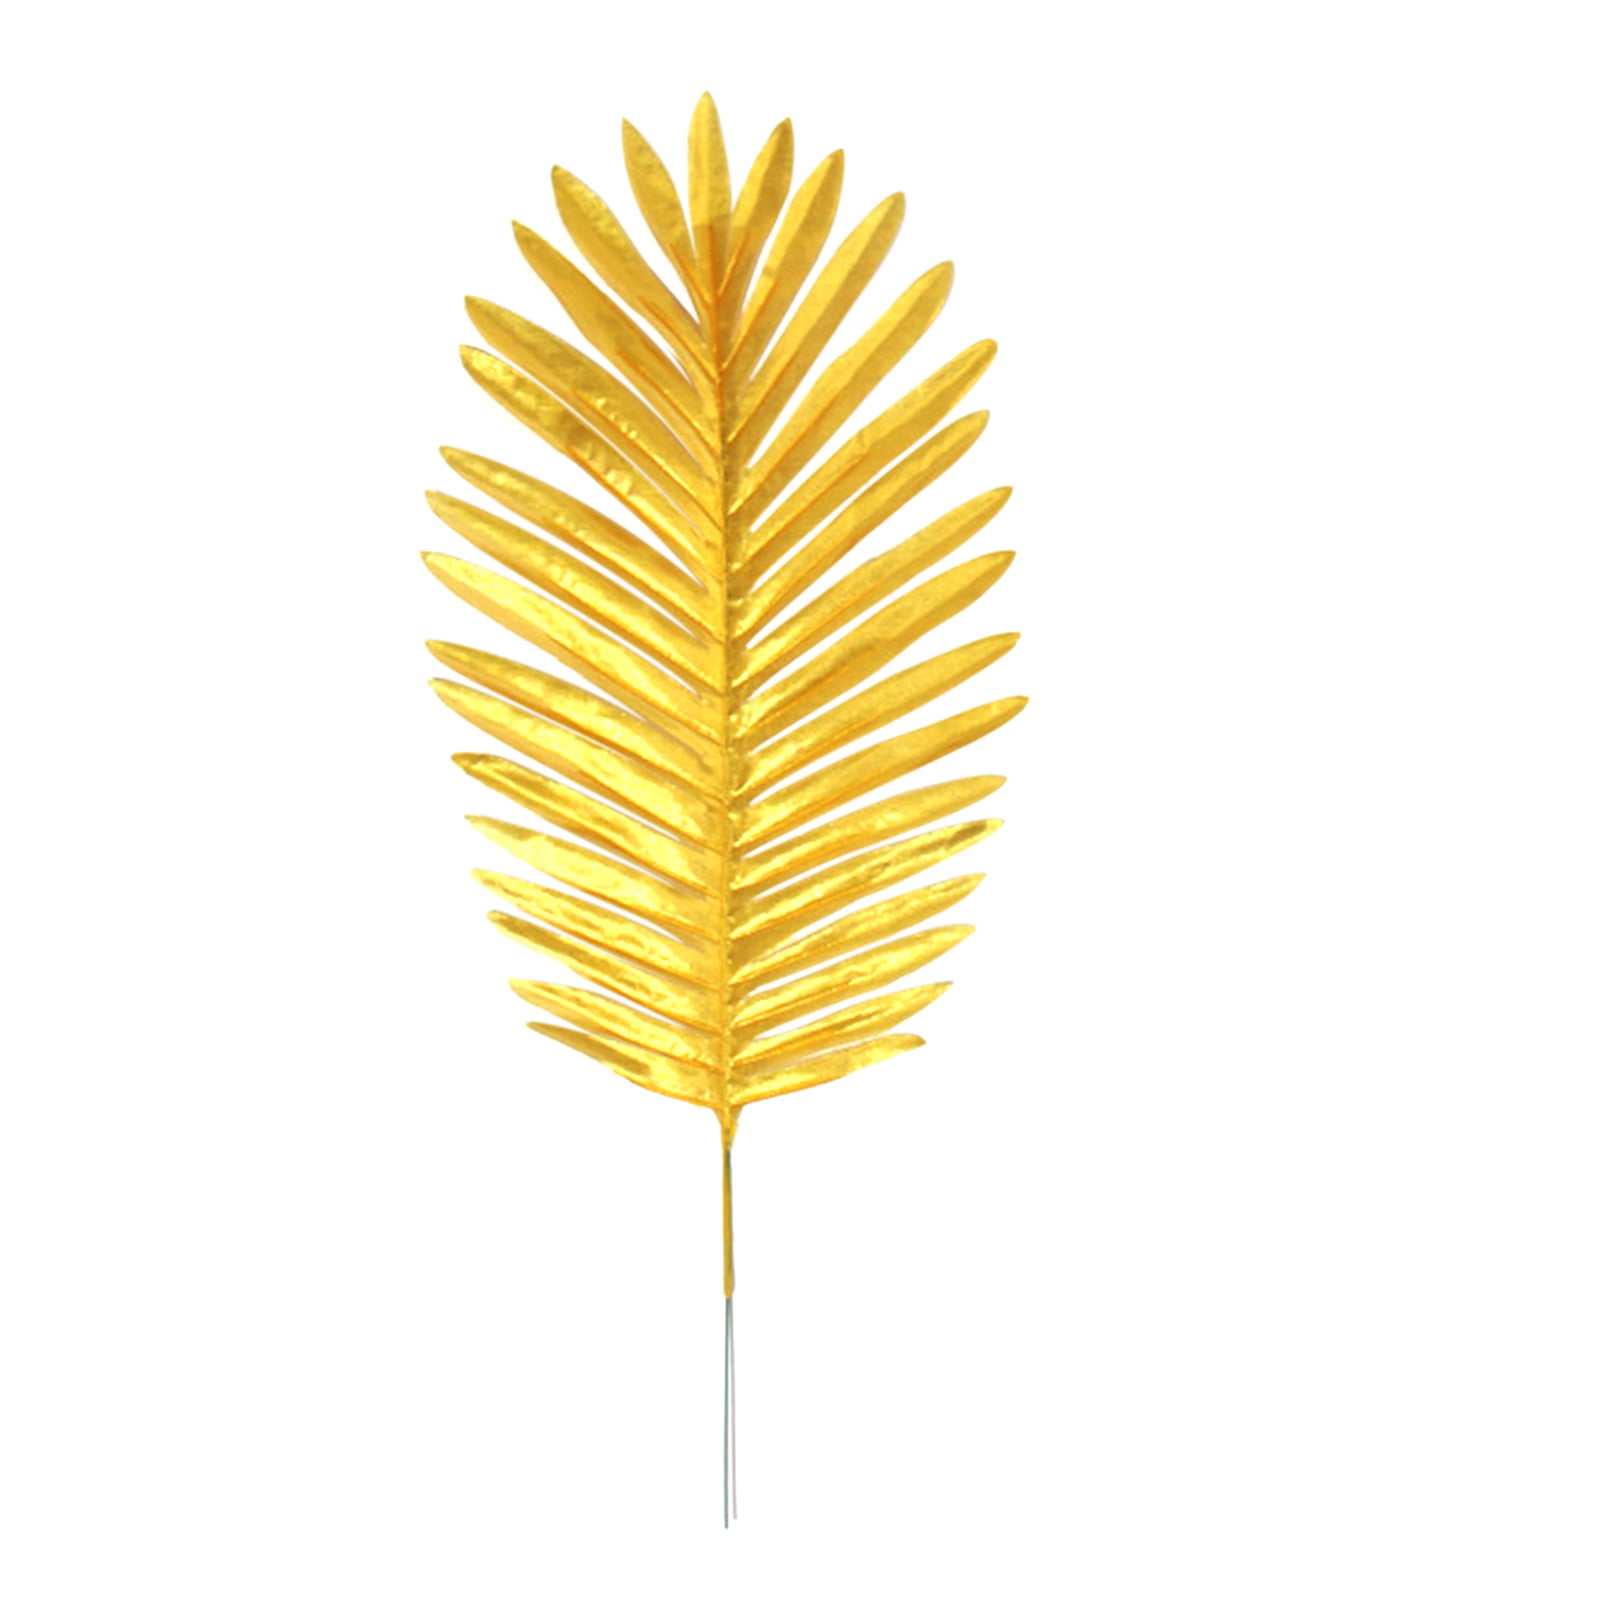 Details about  / 12pcs Simulation Leaf Artificial Gold Silk Plant Tropical Palm Leaves Decor*